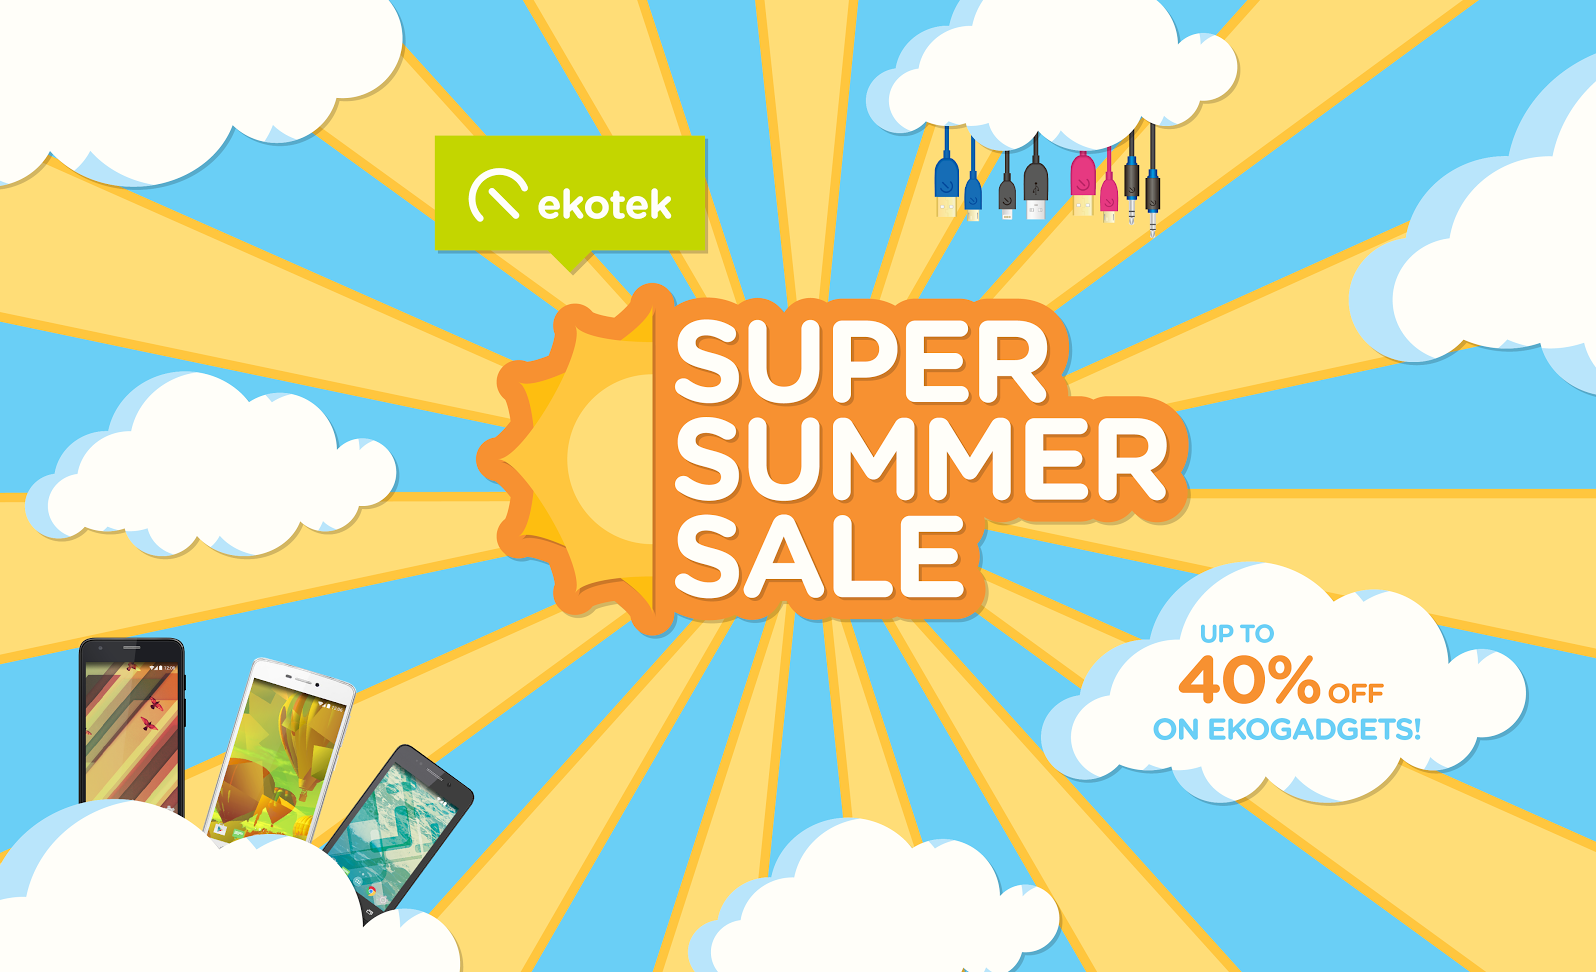 Ekotek's Super Summer Sale Promo!